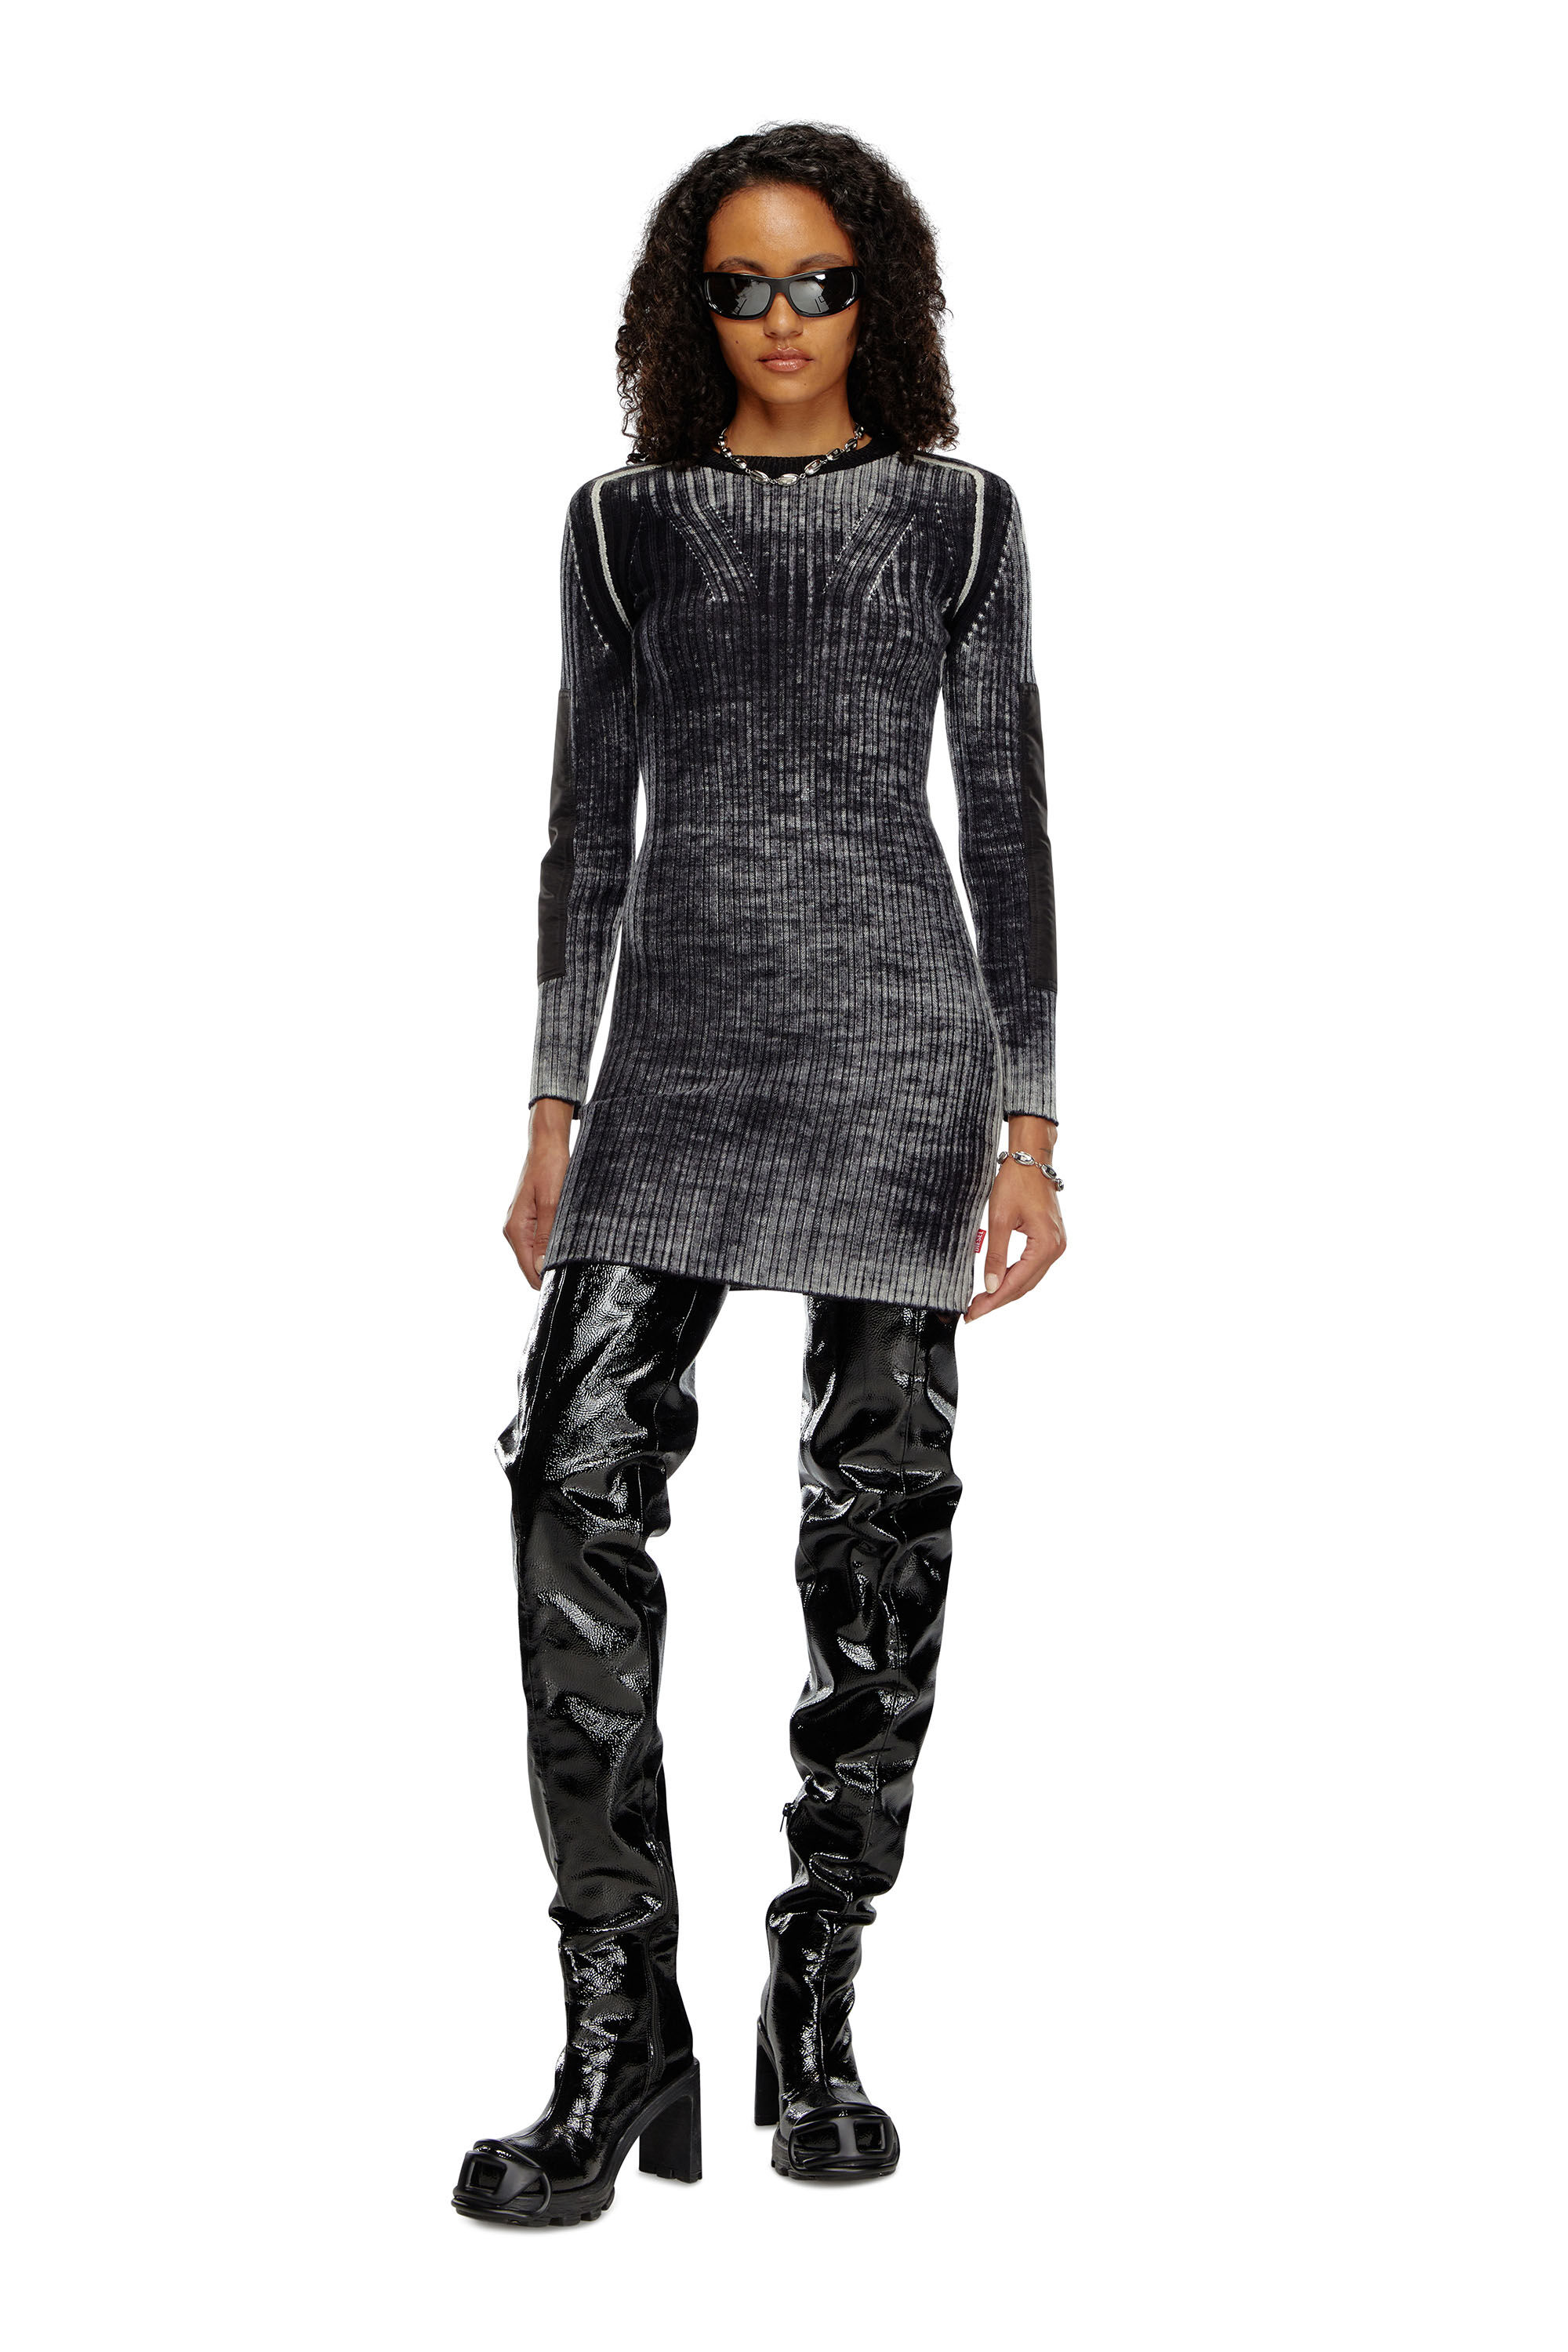 Diesel - M-ARTISTA, Woman Short dress in treated wool knit in Black - Image 3